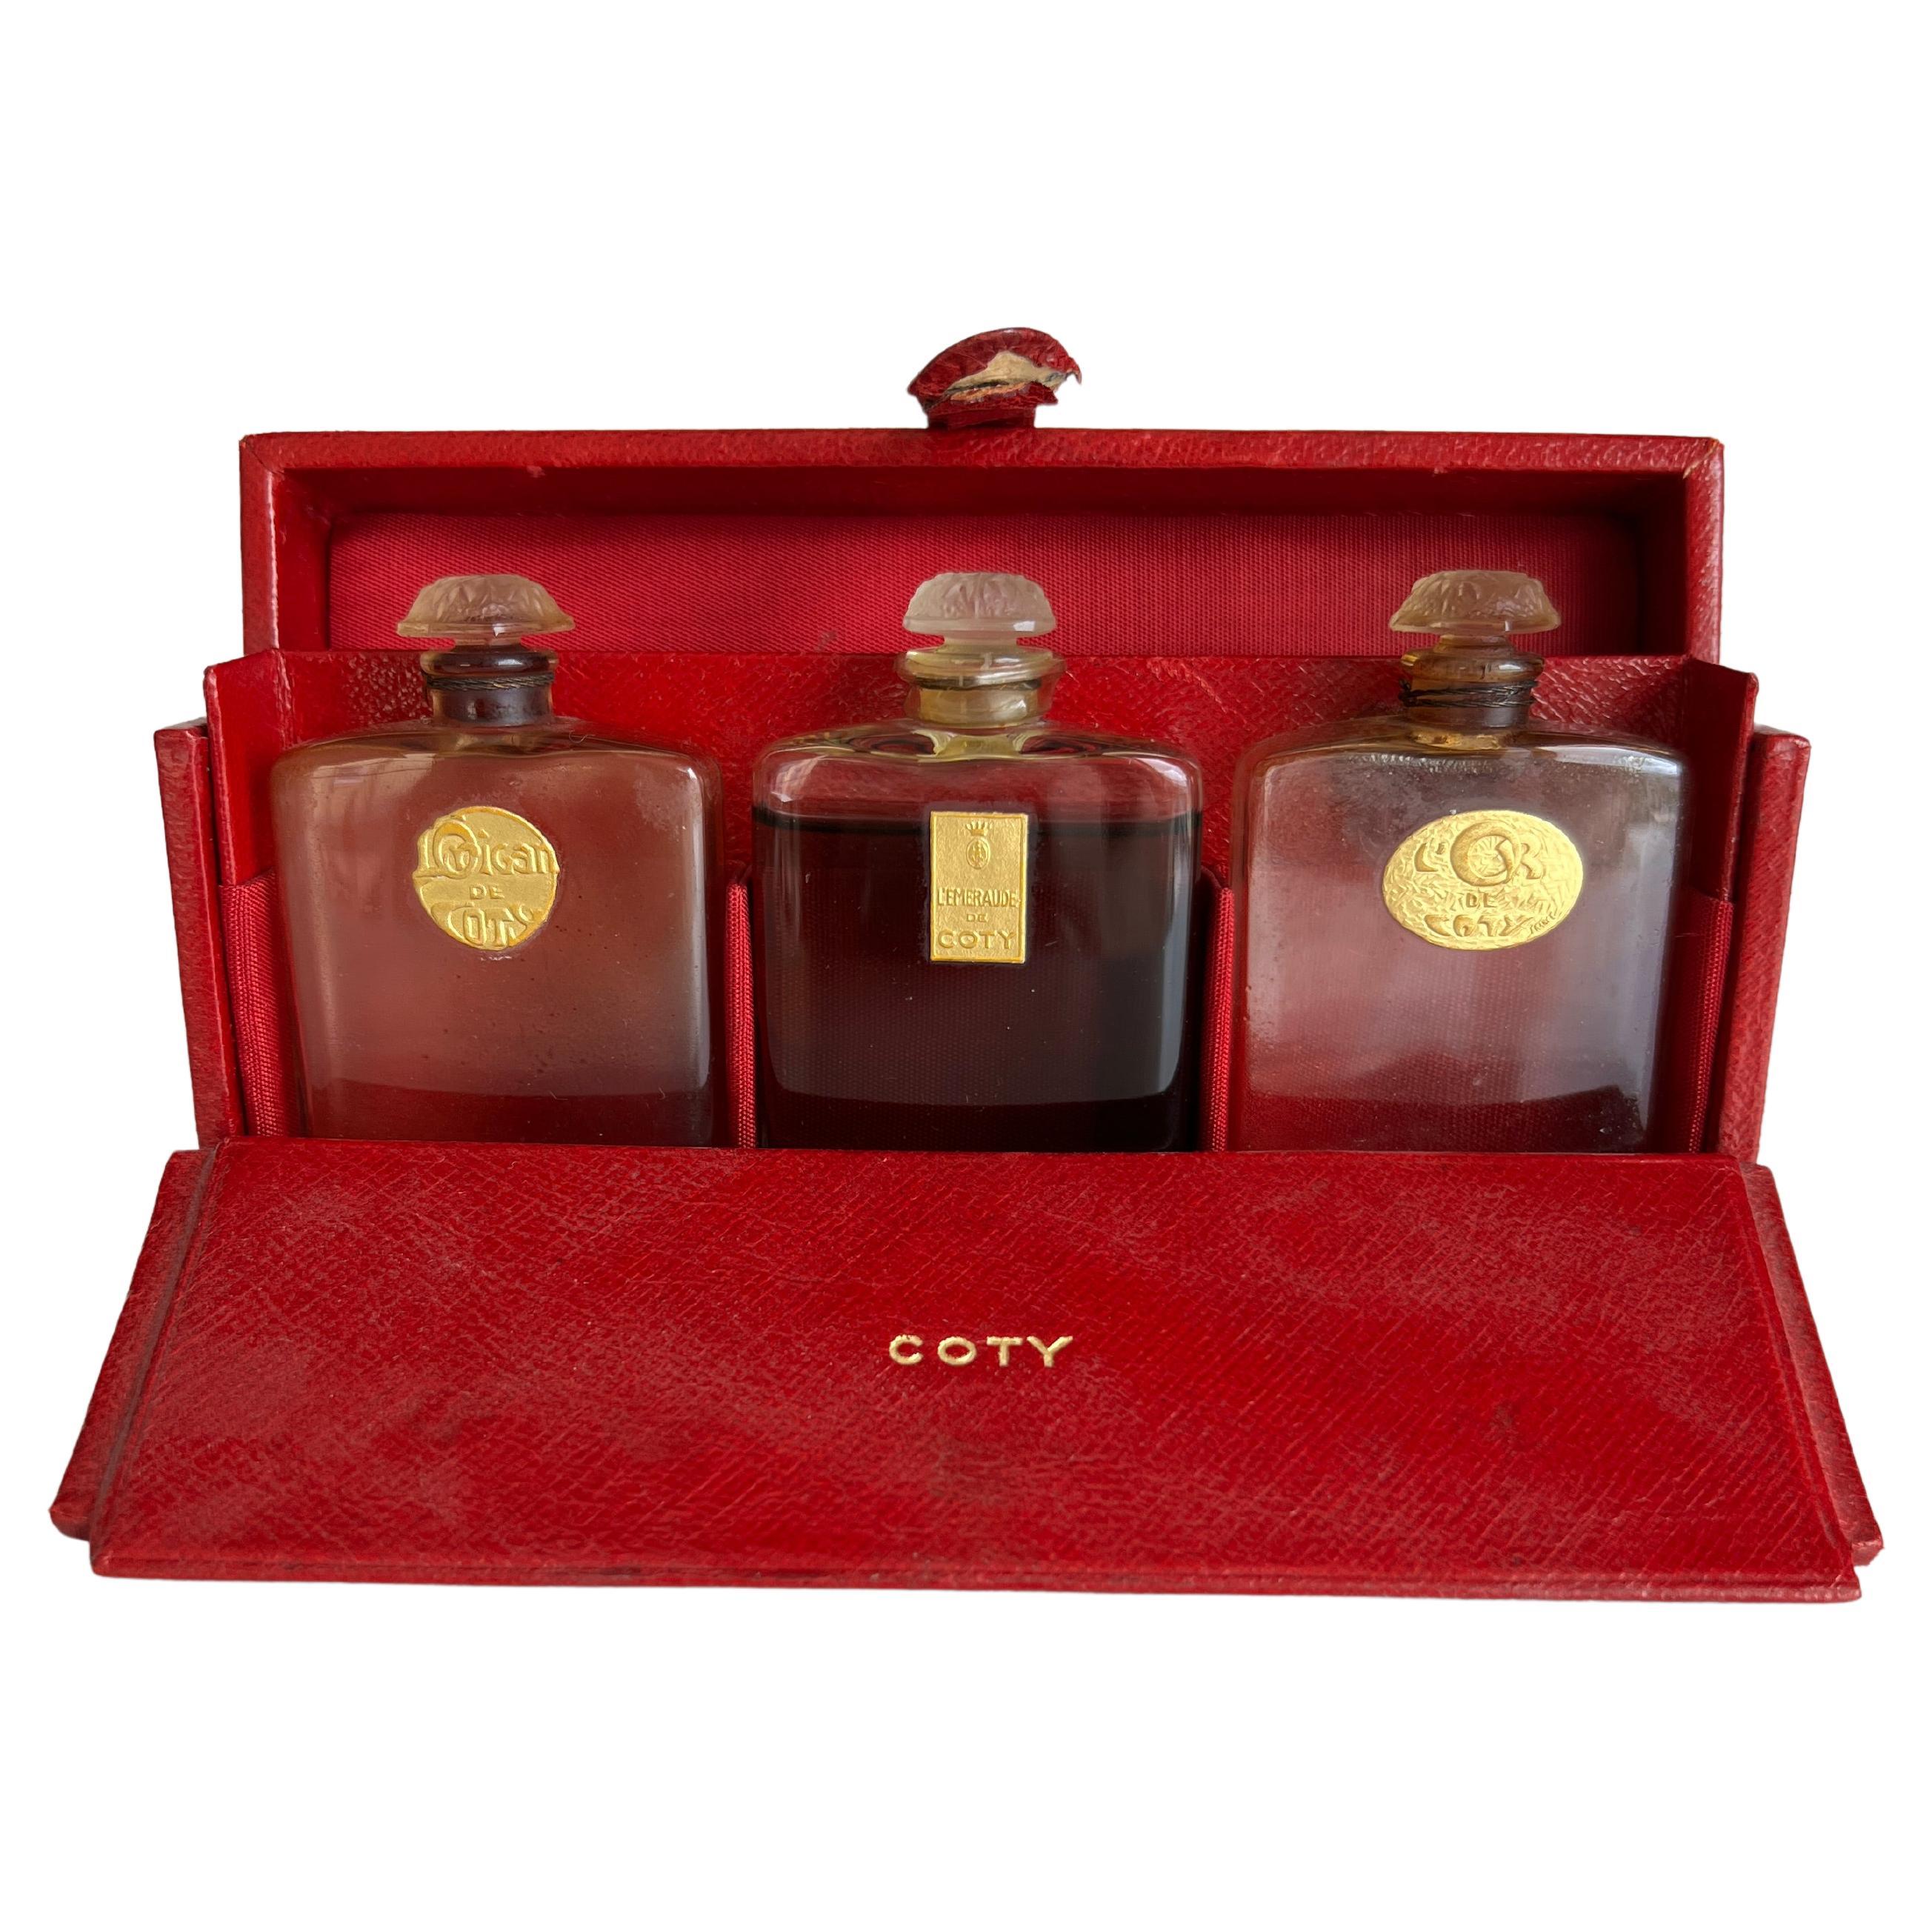 Ensemble de parfums français Voyager Lalique Coty et étui en cuir rouge des années 1920, L'Origan